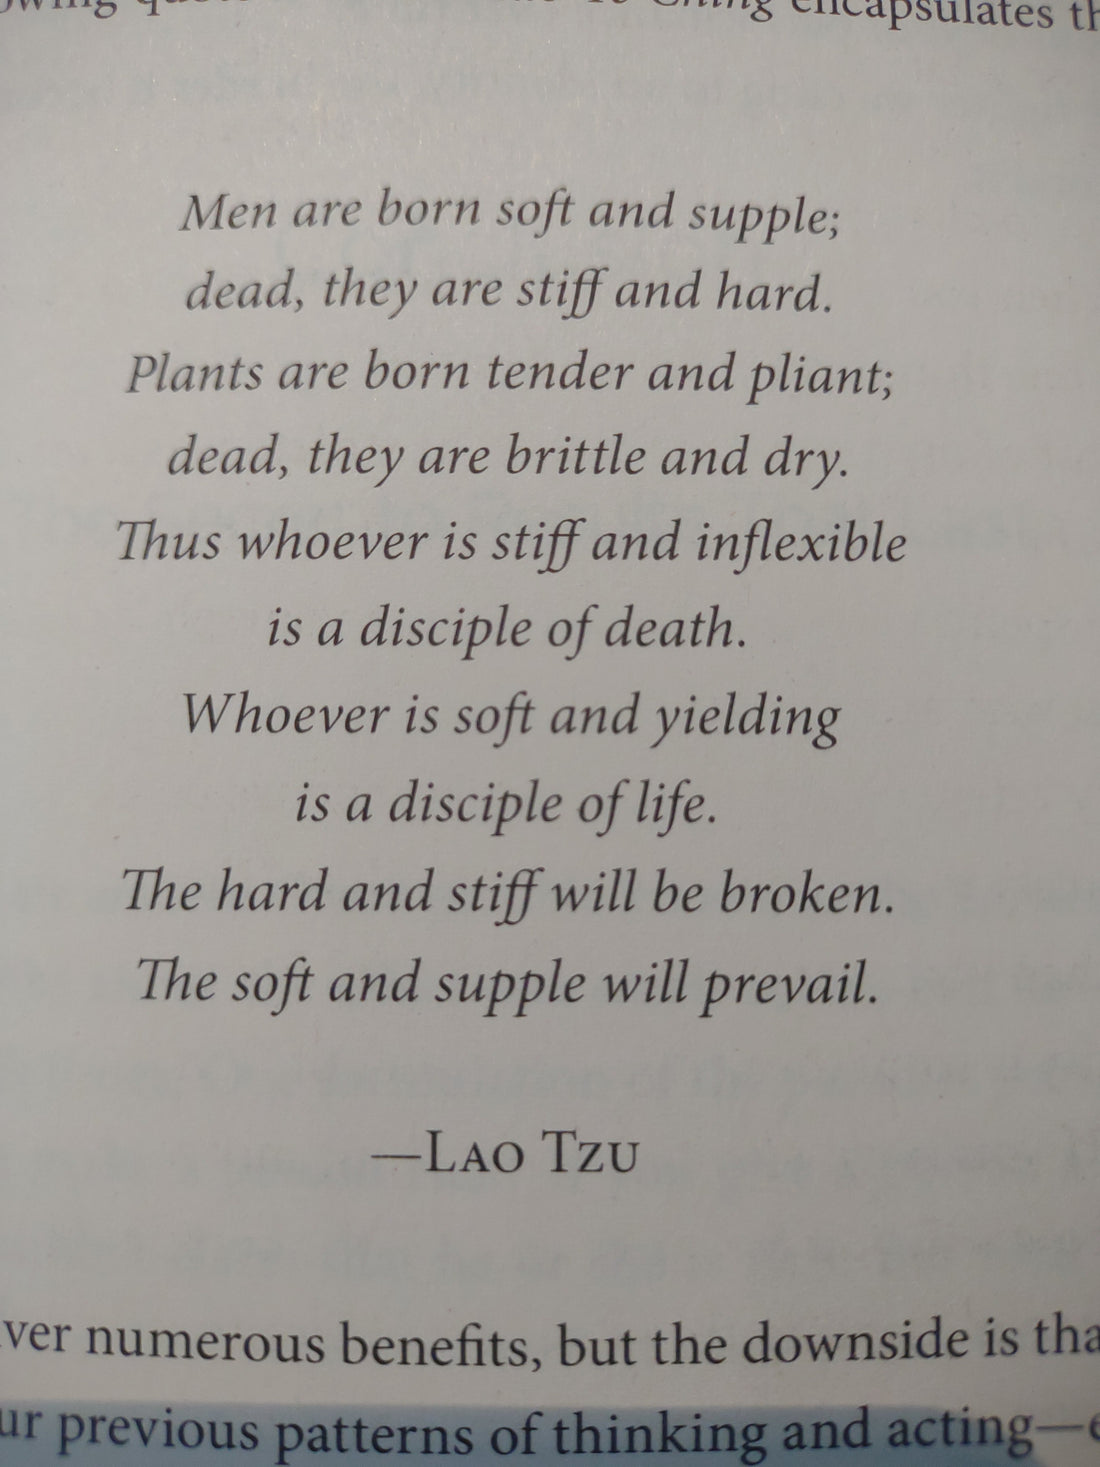 Lau Tzu quote 